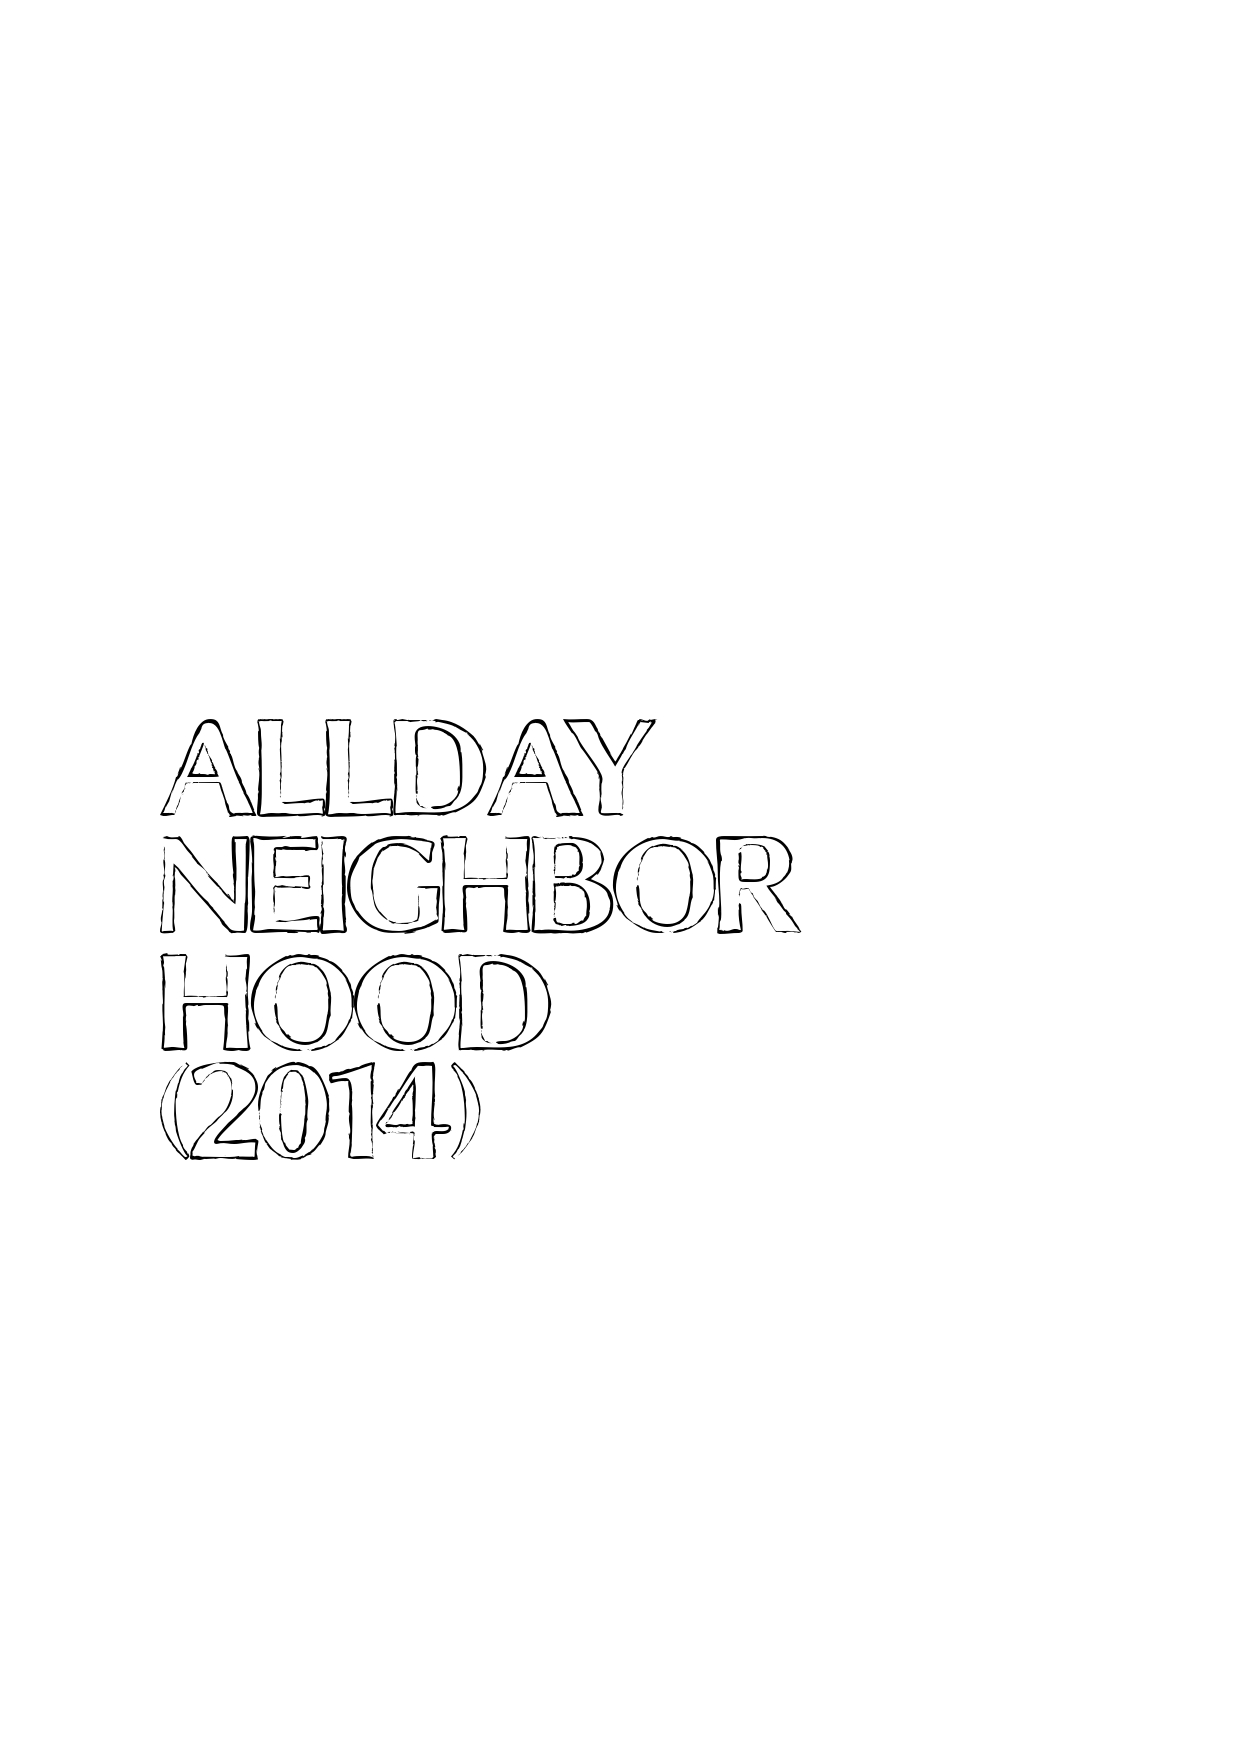 AllDayNeighborhood(2014)